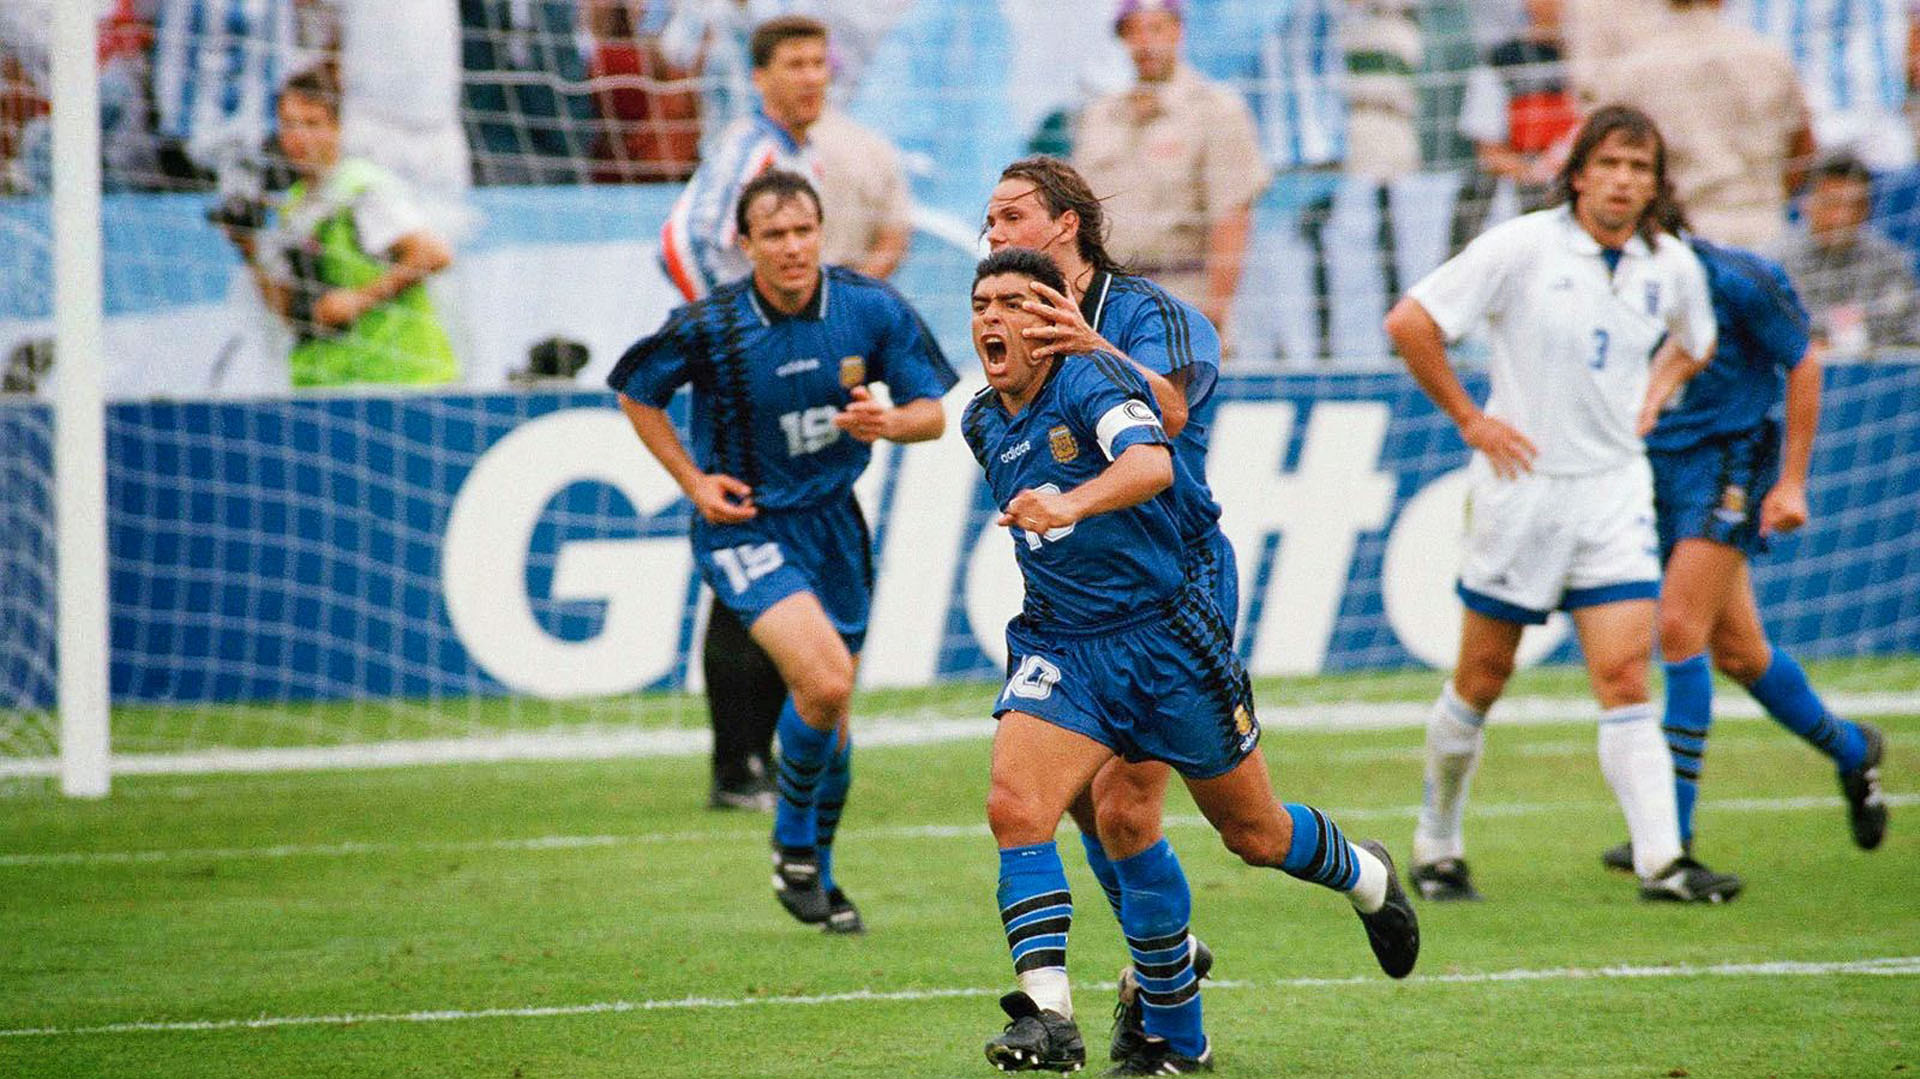 El  21 de junio de 1994 Argentina venció 4-0 a Grecia en el Mundial con tres goles de Batistuta y uno de Maradona, el último del 10 en una Copa del Mundo